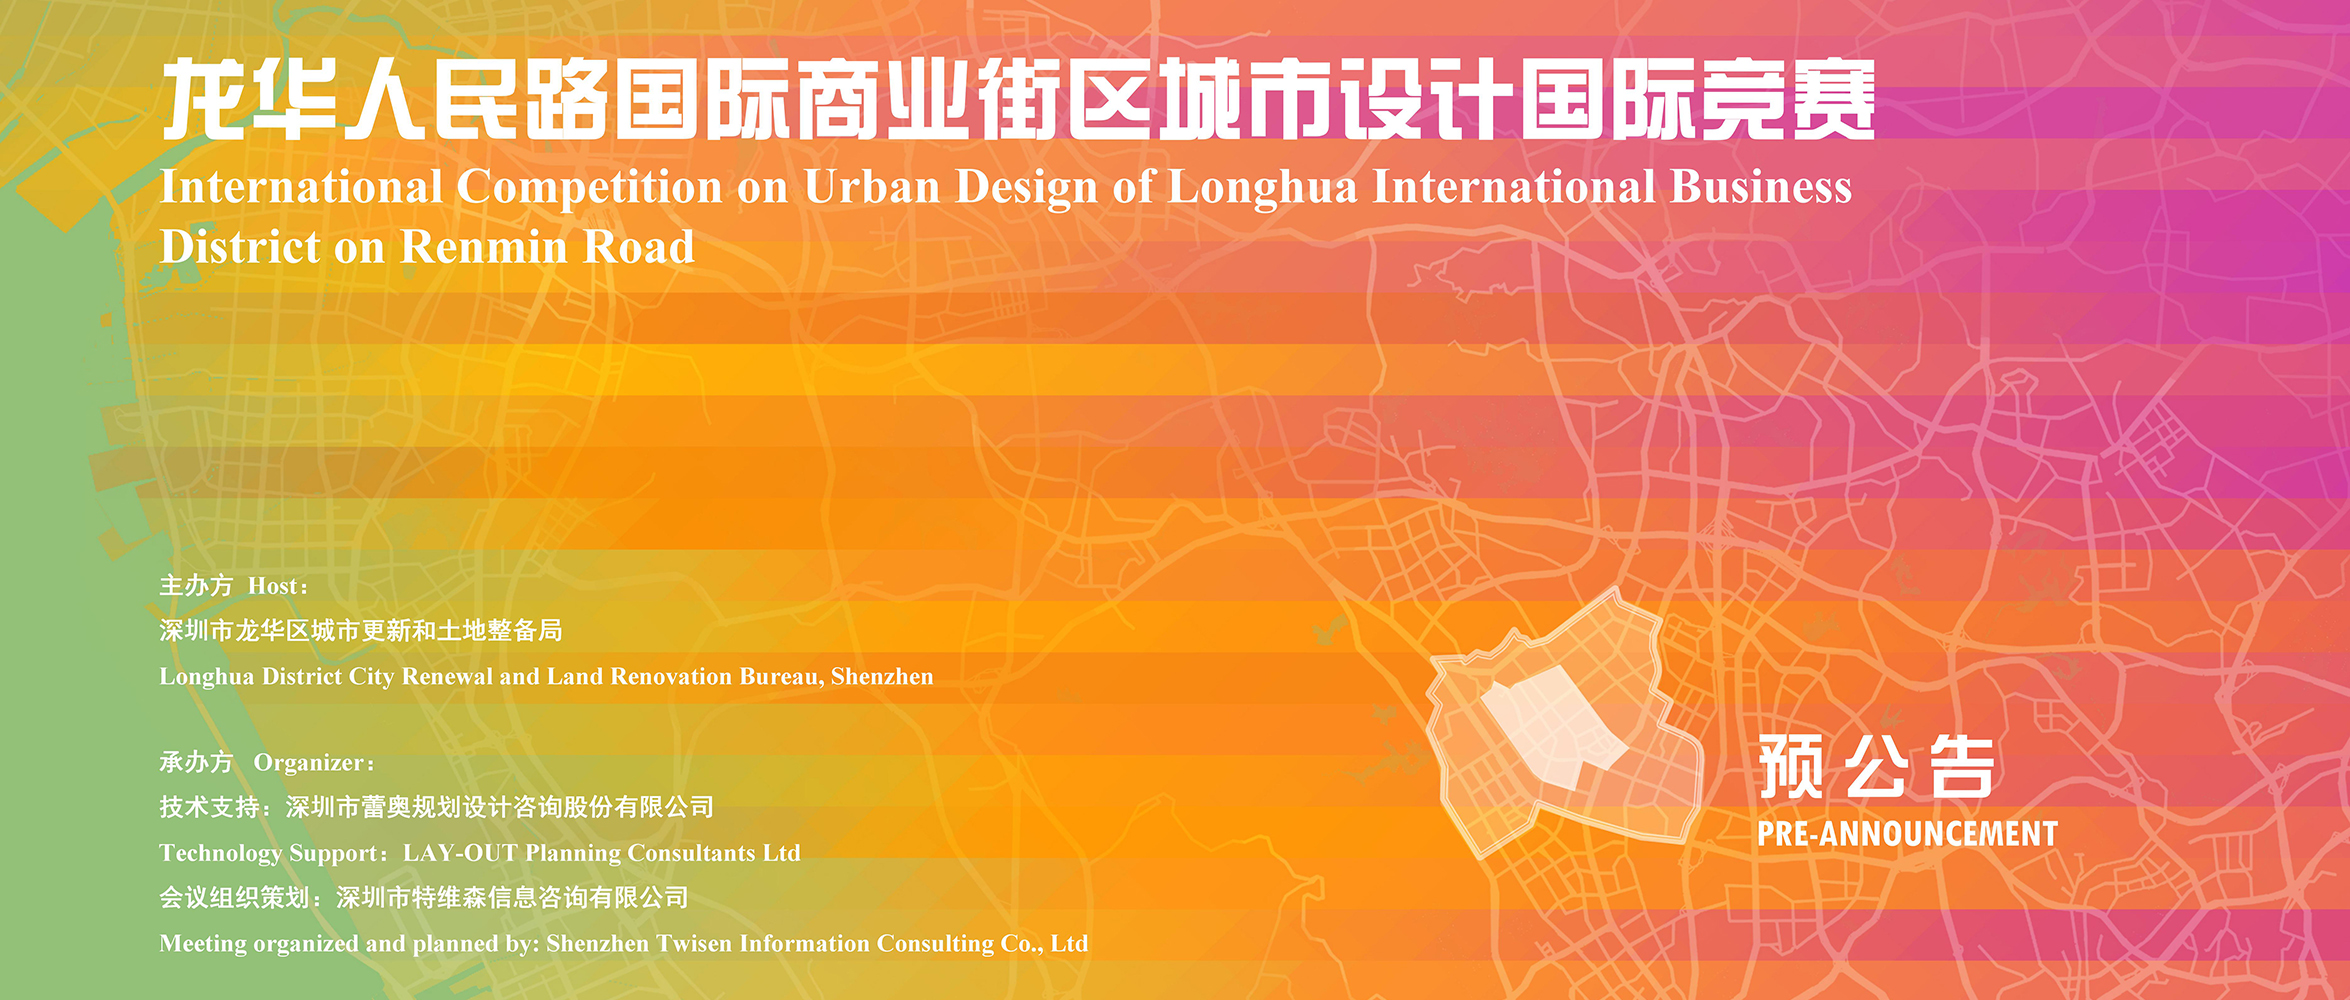 预公告 | 深圳市龙华人民路国际商业街区城市设计国际竞赛